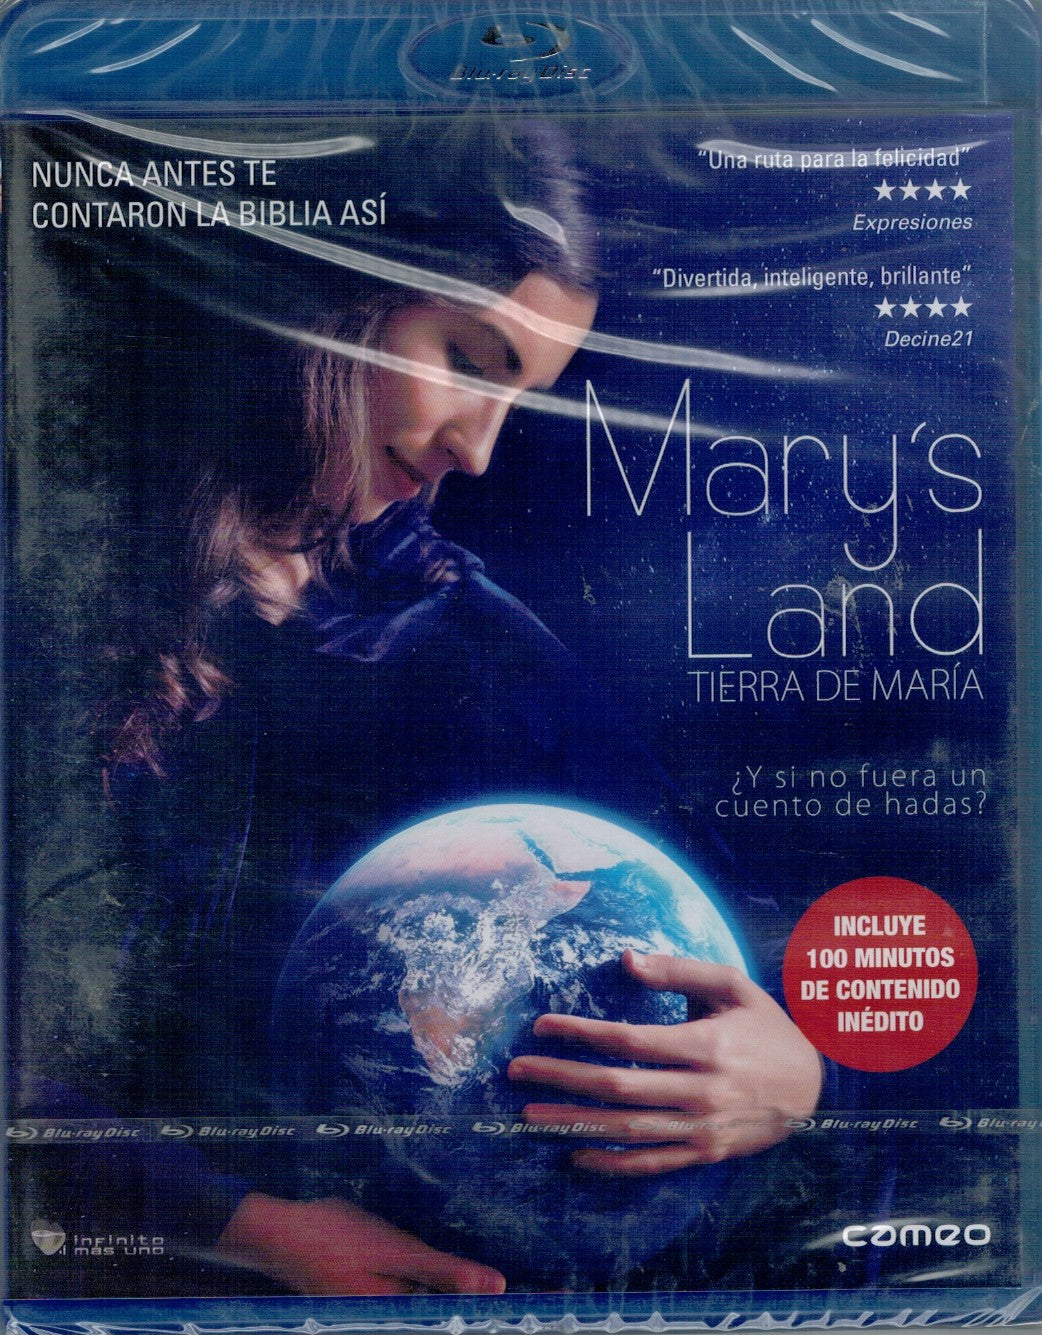 Mary's Land (Tierra de María) (Bluray Nuevo)